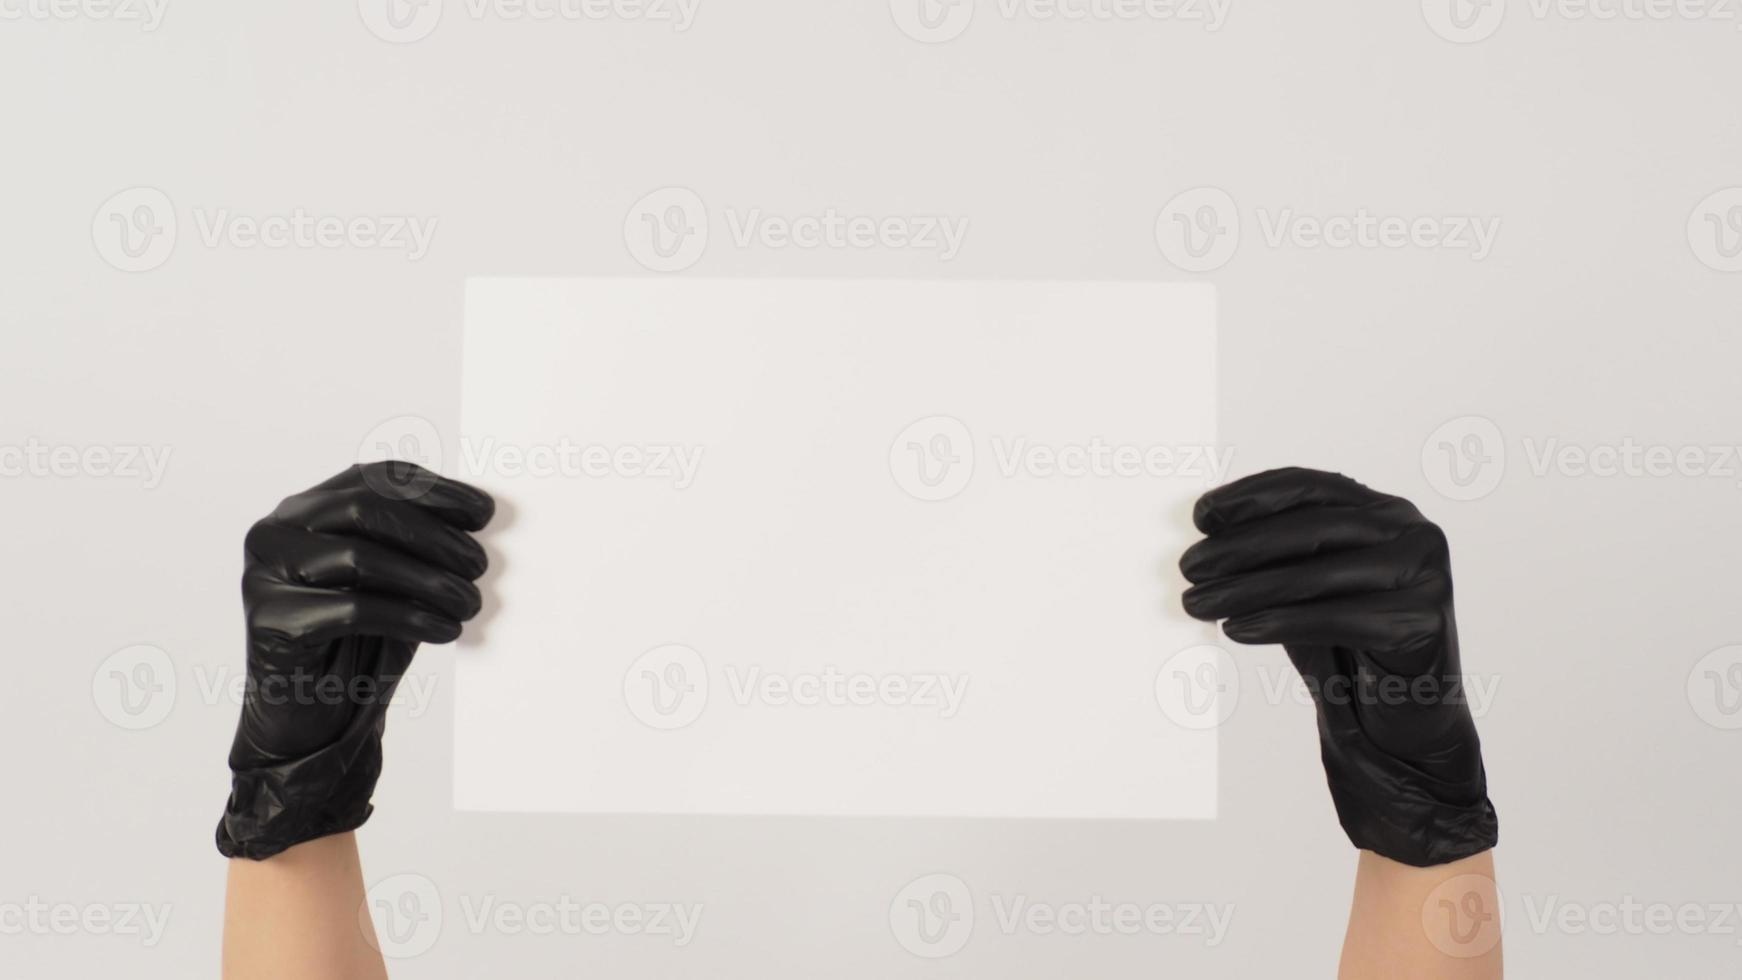 handen is Holding de a4 papier en slijtage latex handschoen Aan wit achtergrond. foto